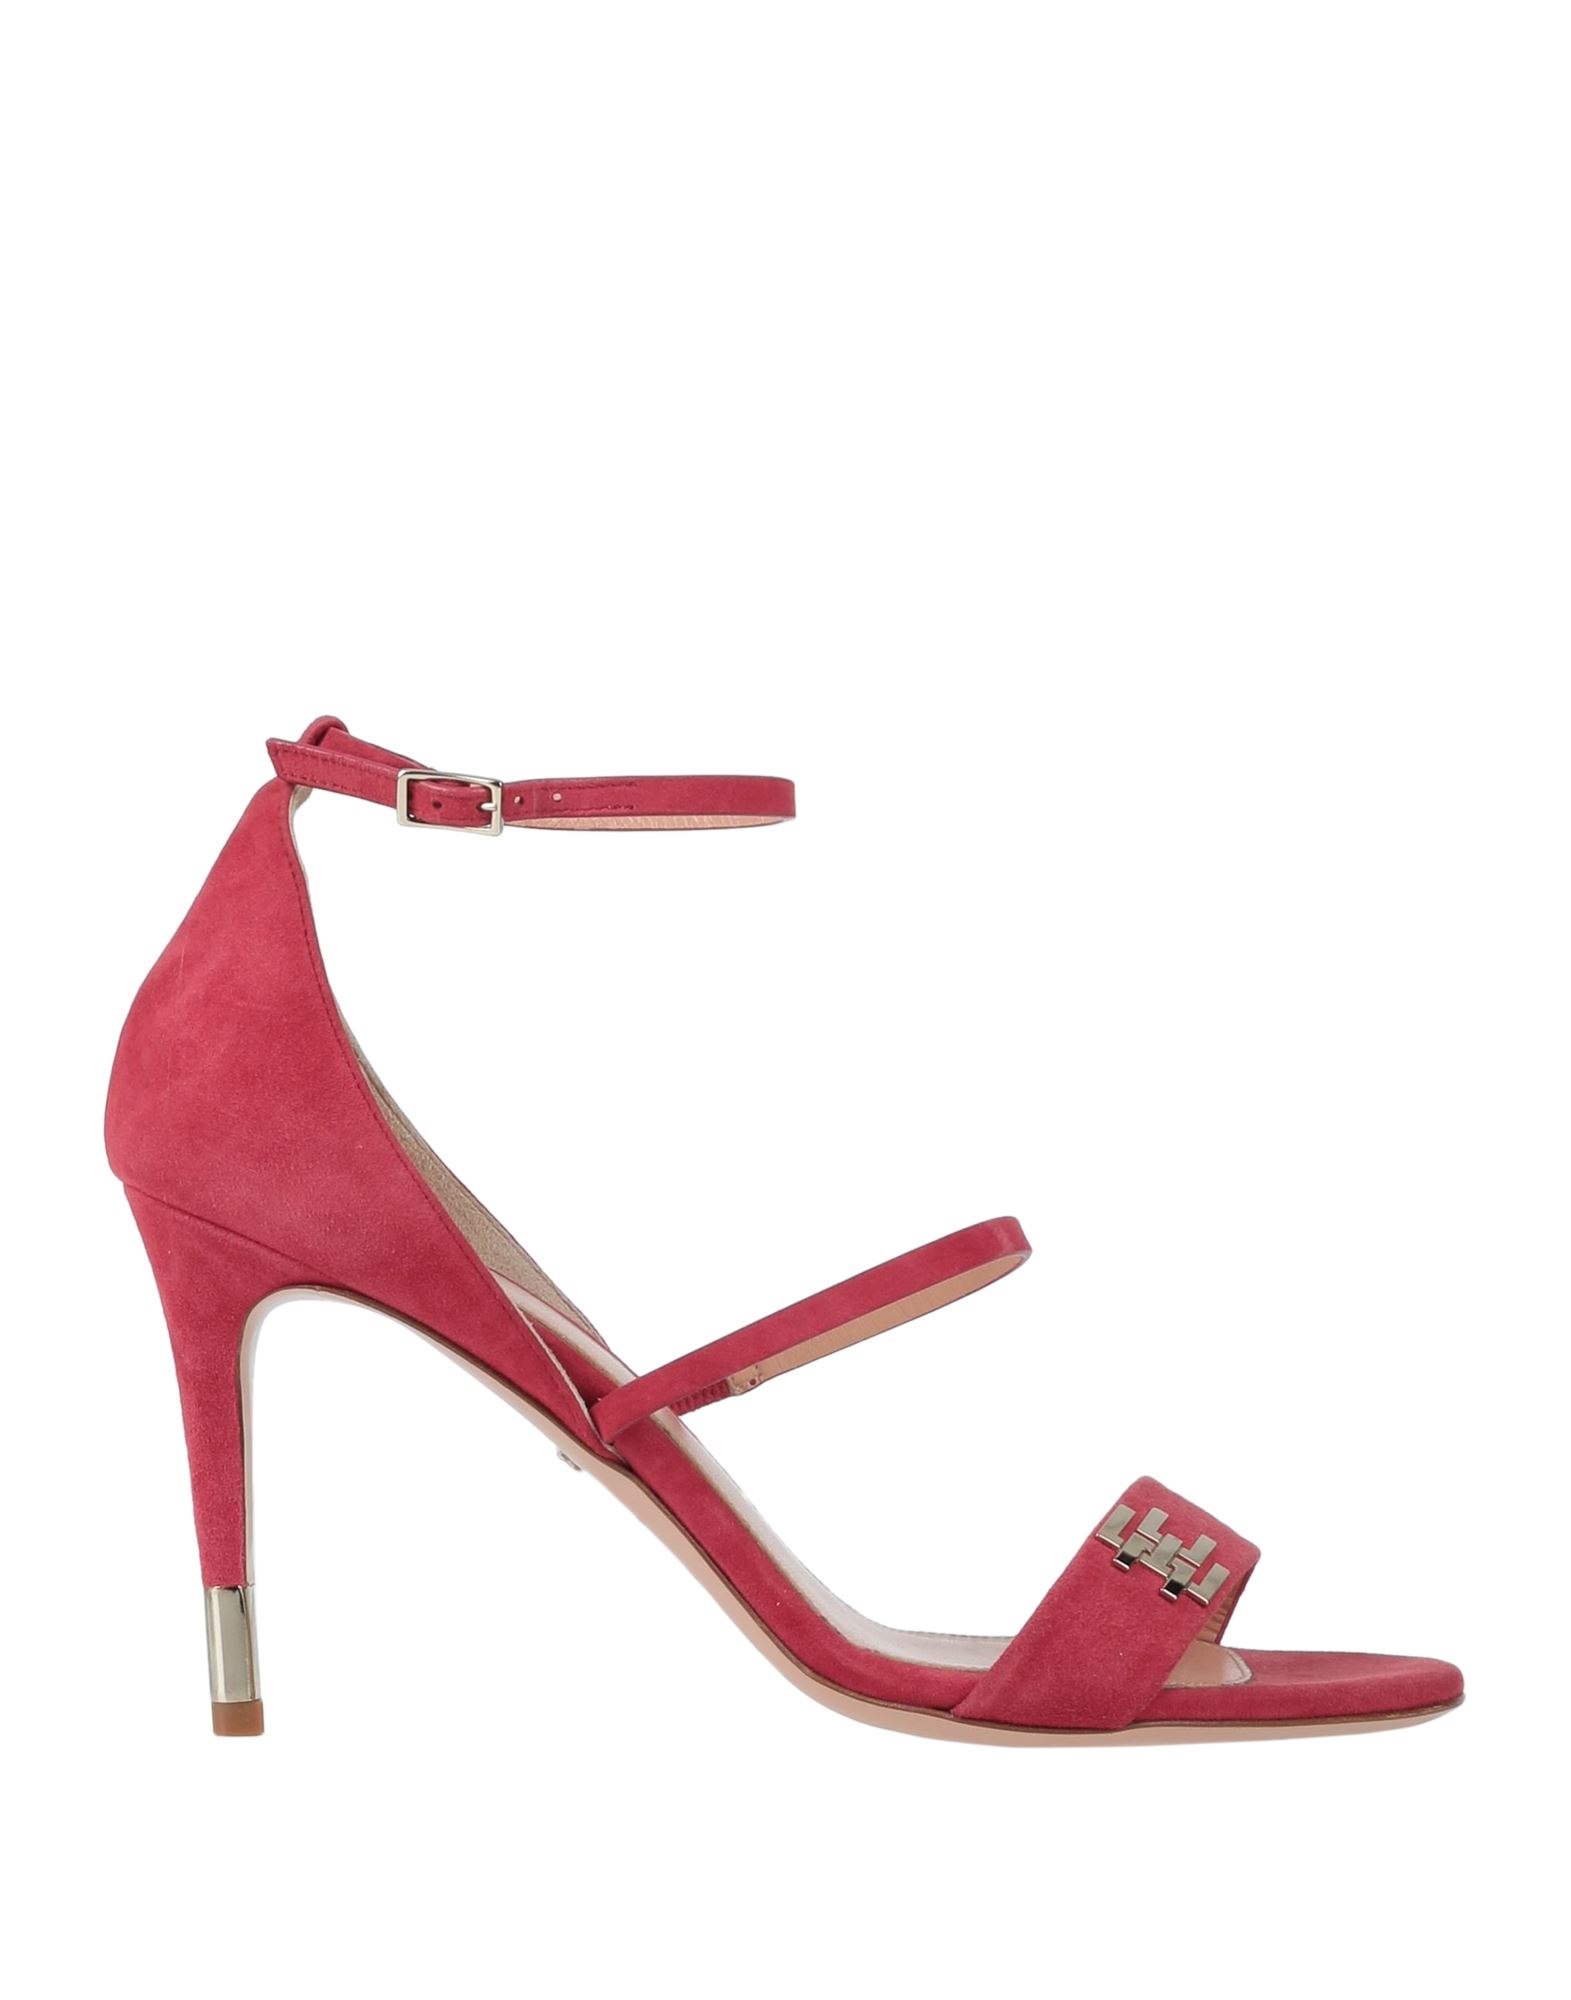 Elisabetta Franchi Sandals In Brick Red